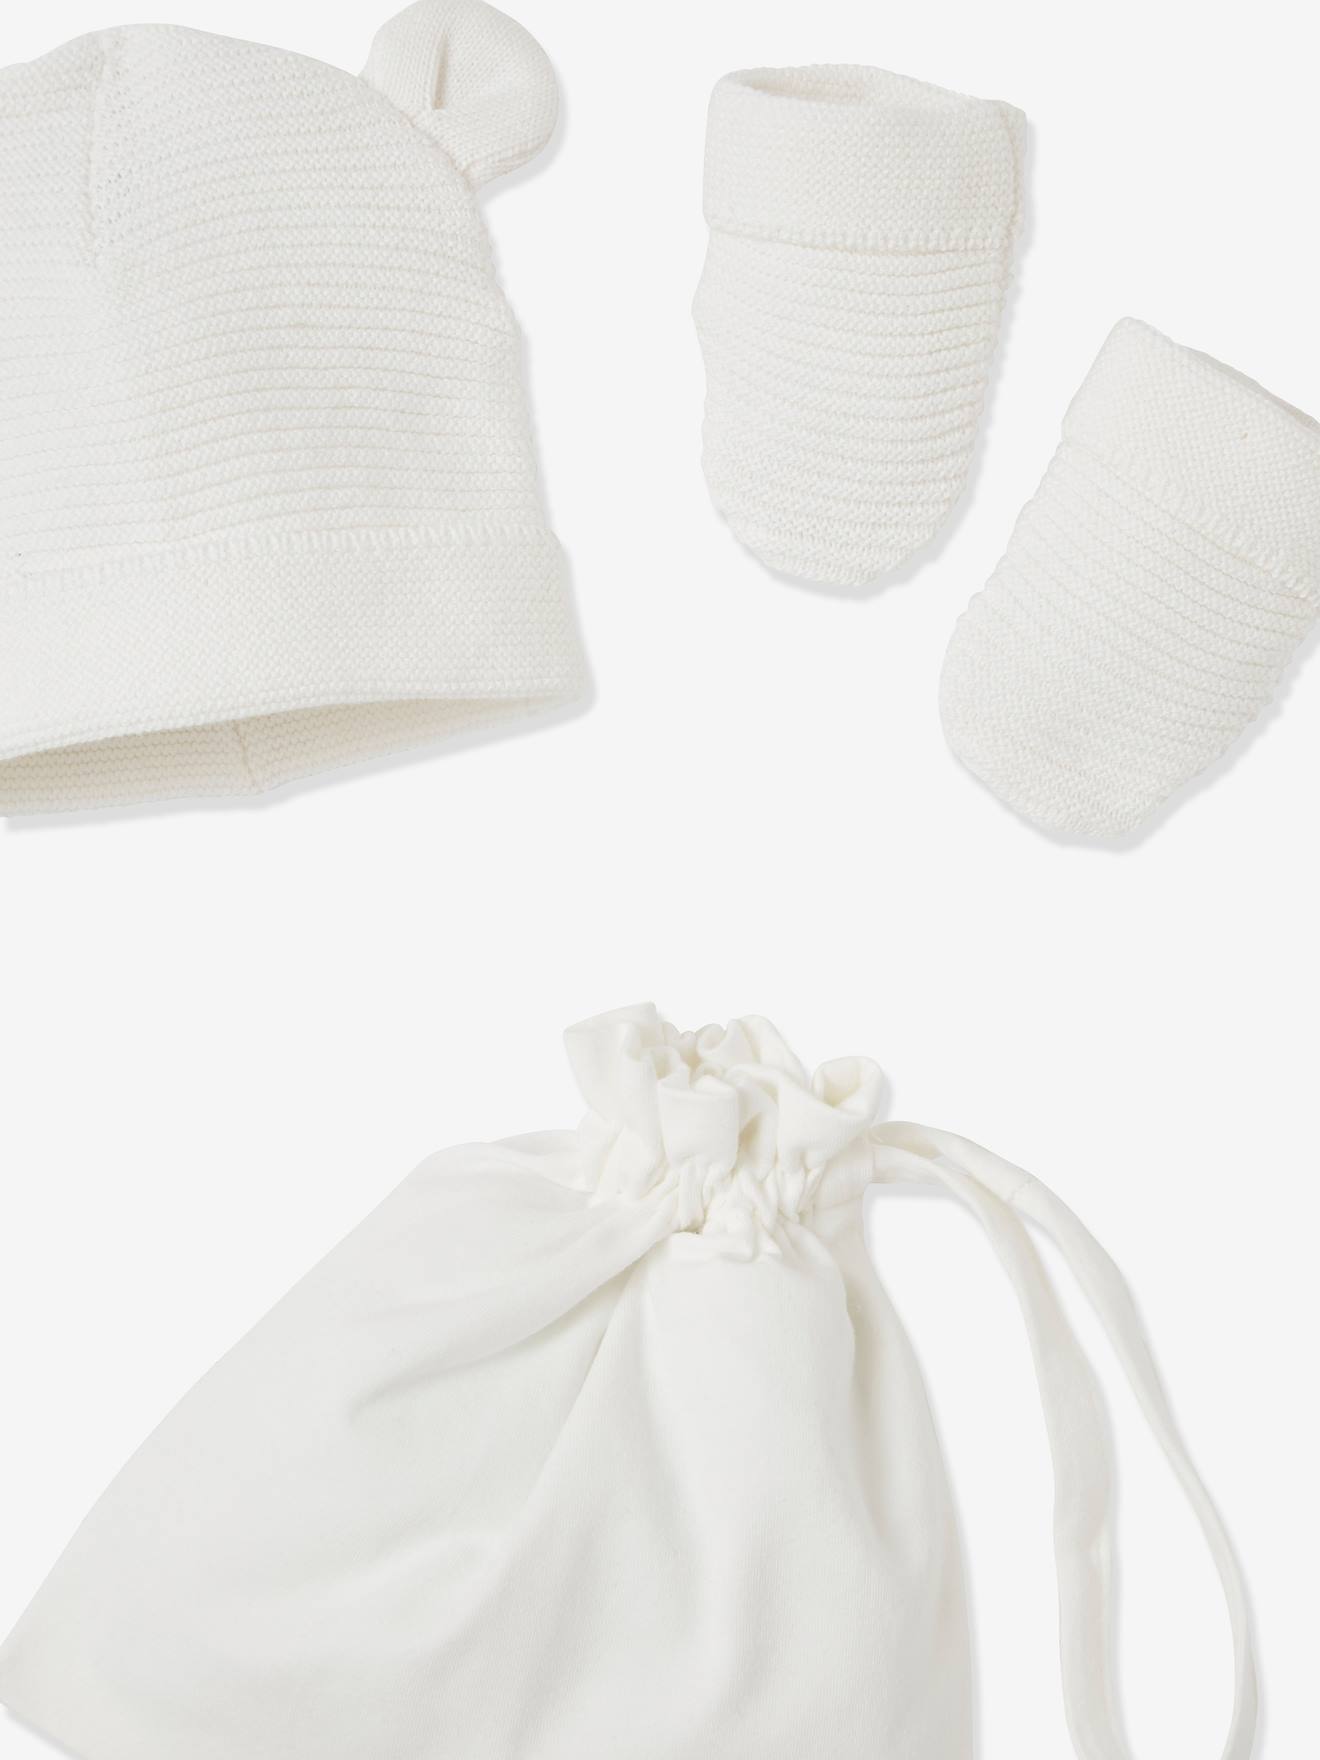 Conjunto de gorra, manoplas patucos para recién nacido, con bolsa a juego blanco medio liso - Vertbaudet